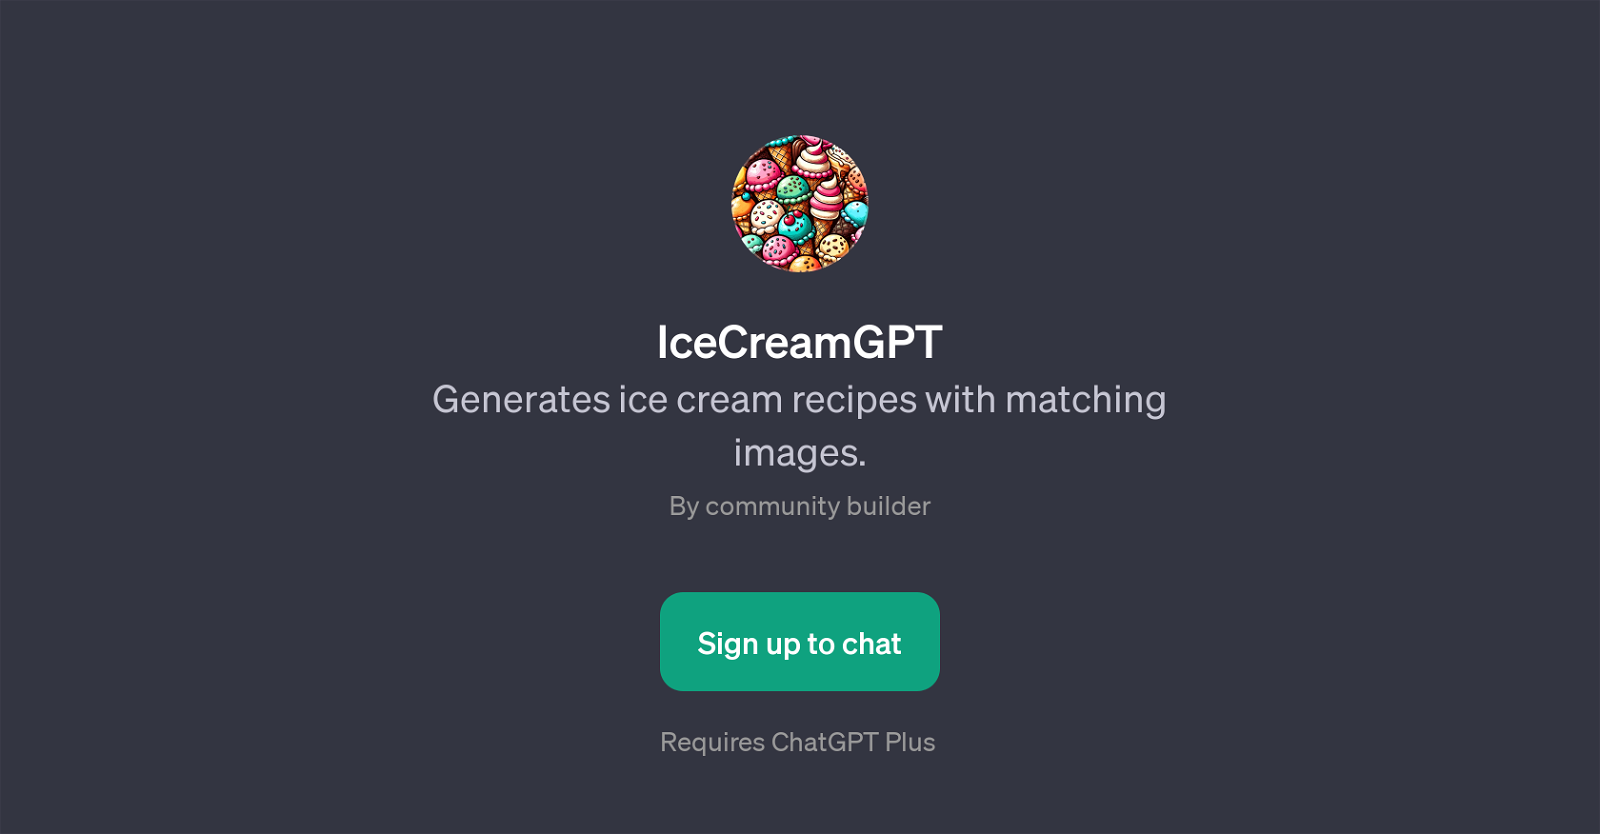 IceCreamGPT website